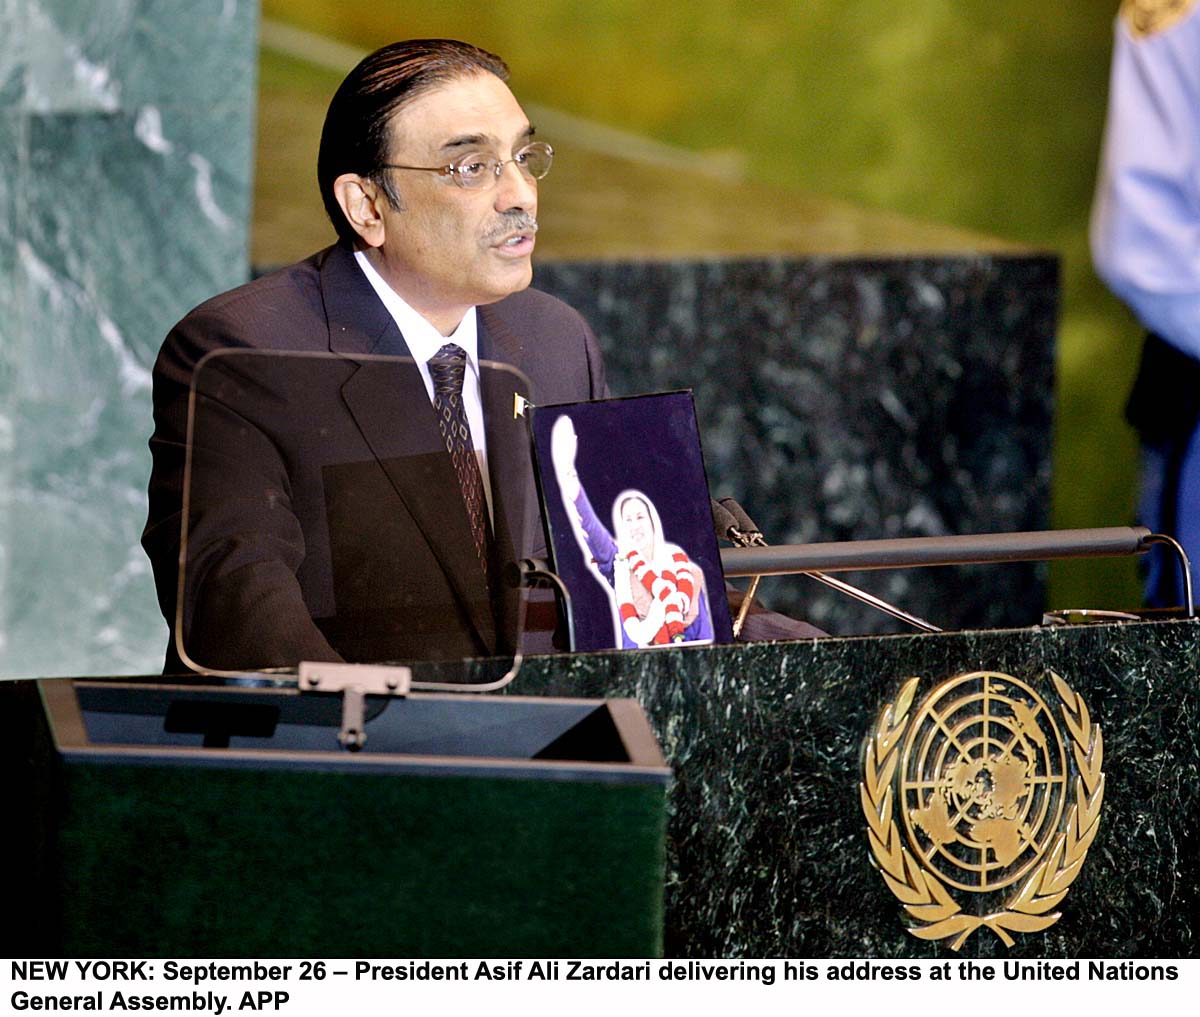 http://3.bp.blogspot.com/-1u31mf92Msg/Tyf5ekqNc-I/AAAAAAAADY0/KEUU0x1pYAw/s1600/Asif-Ali-Zardari-photos.jpg